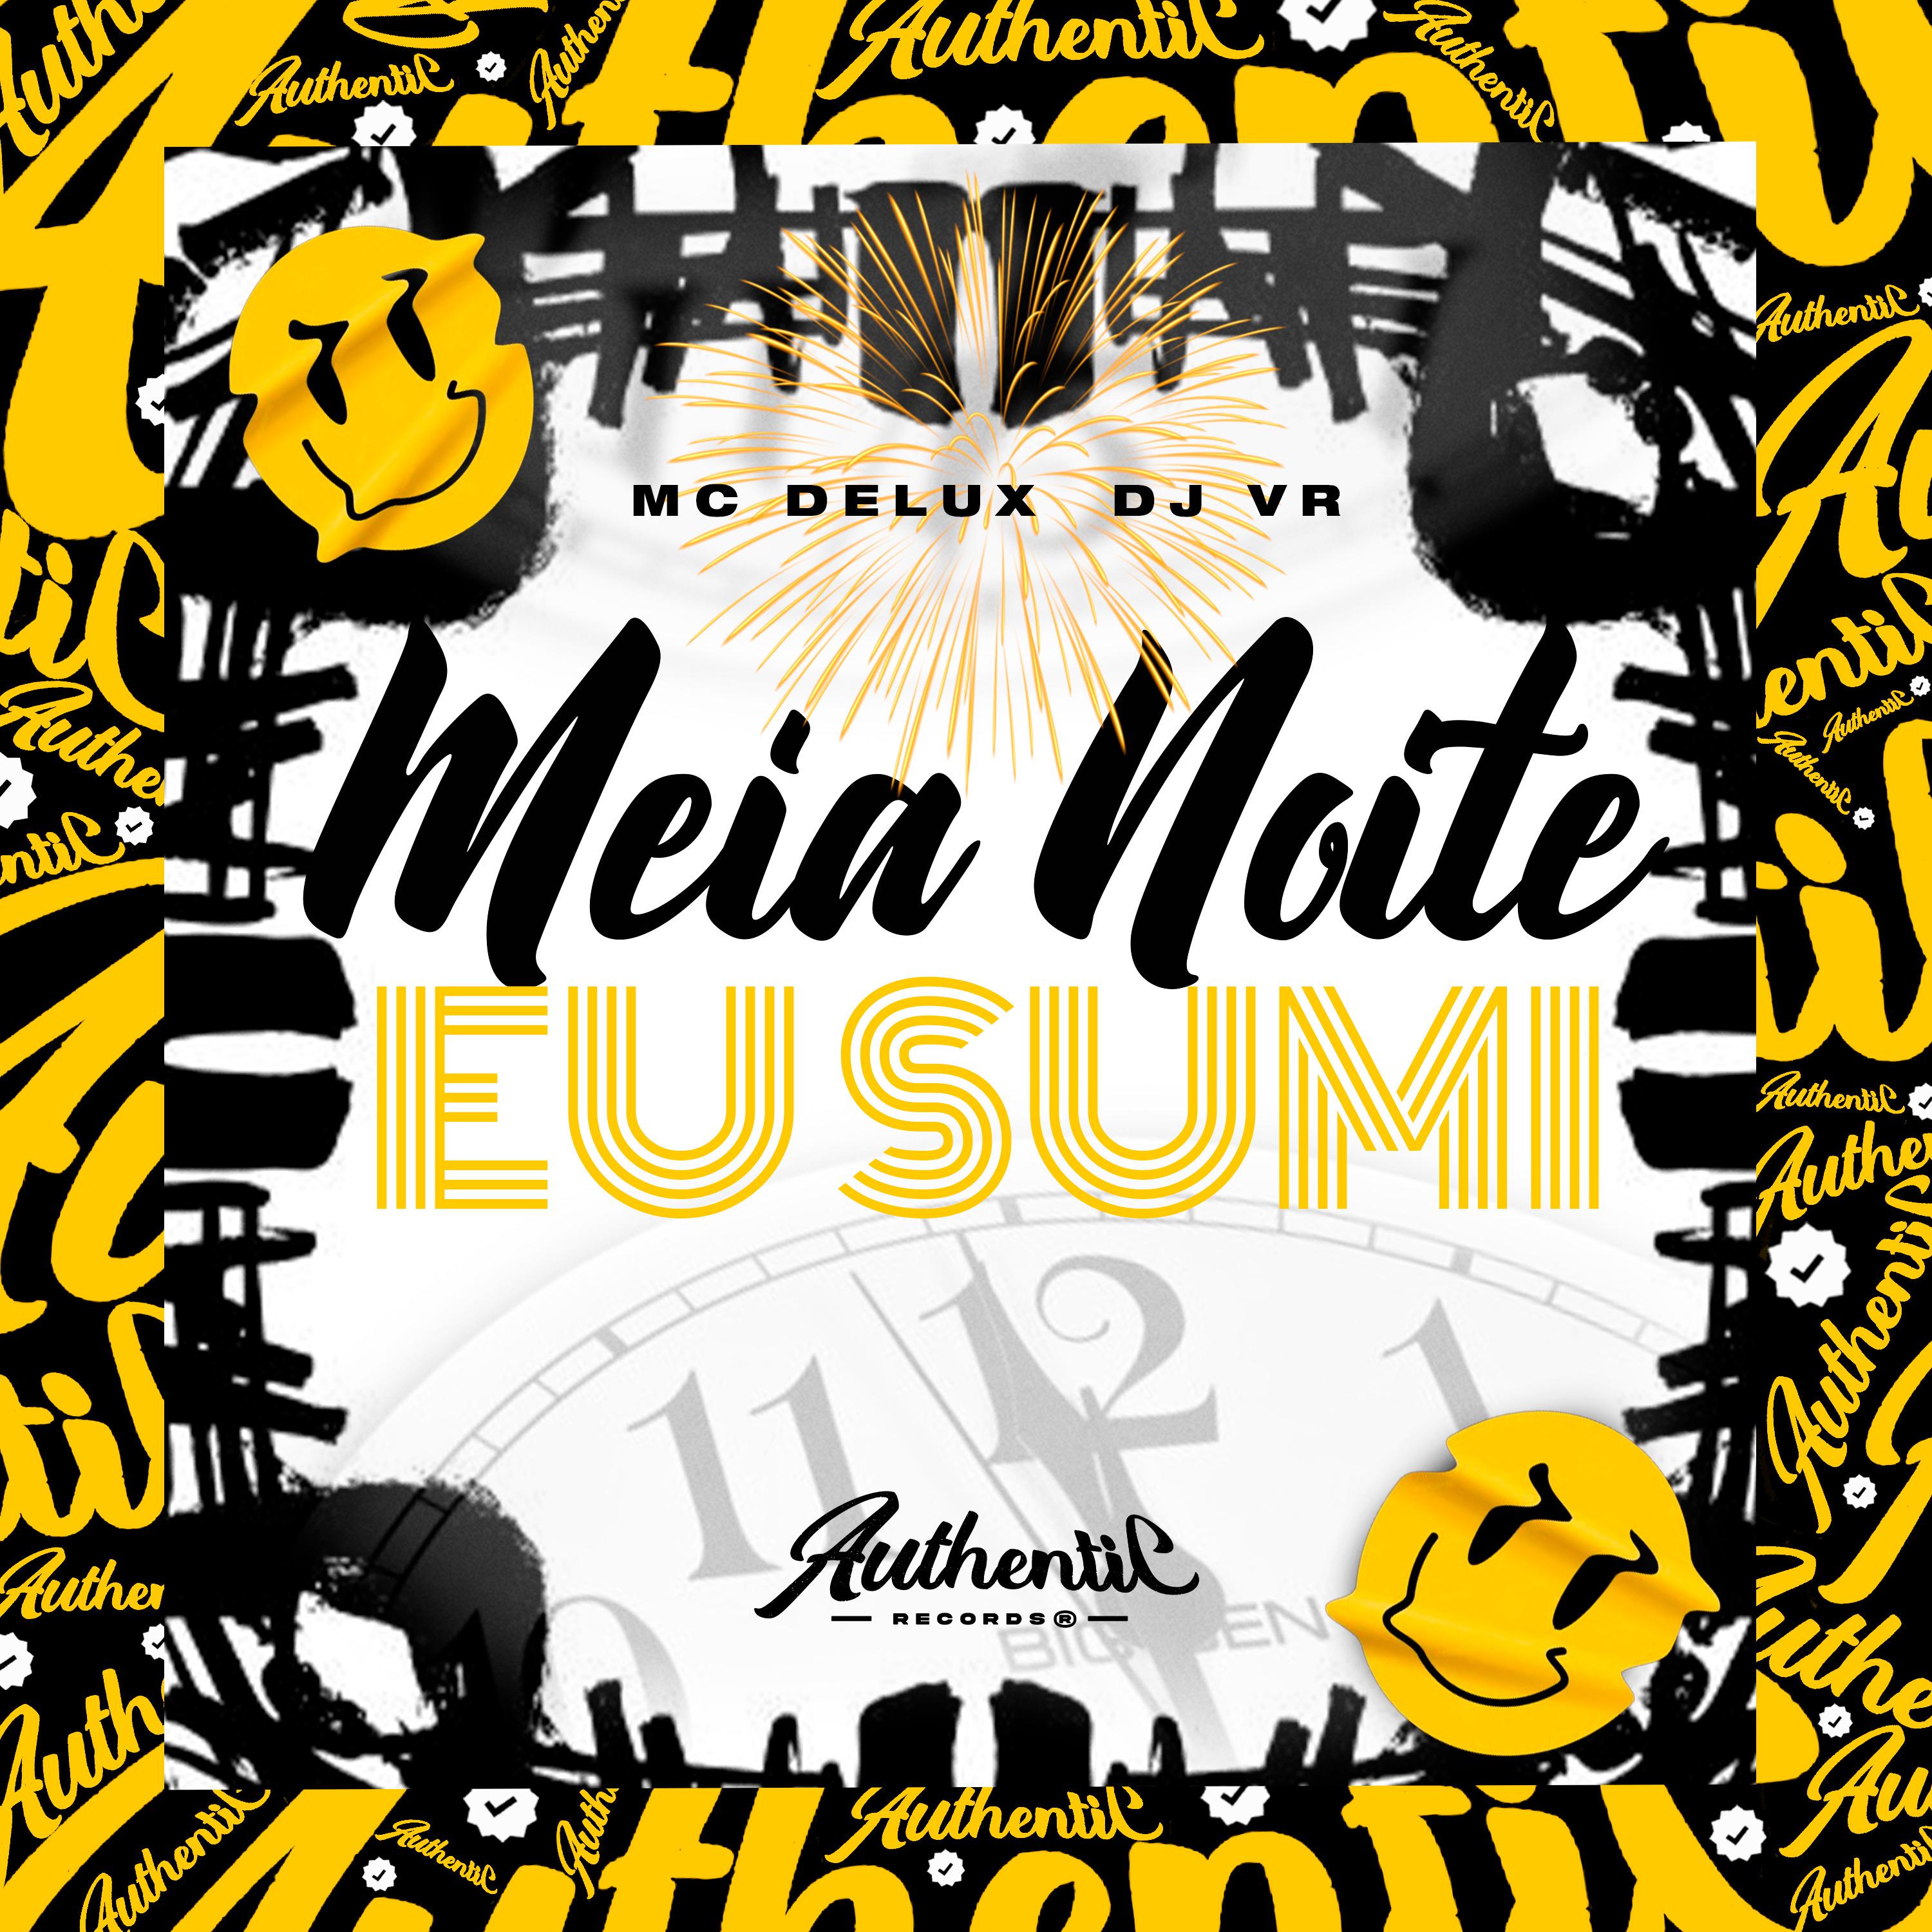 Постер альбома Meia Noite Eu Sumo